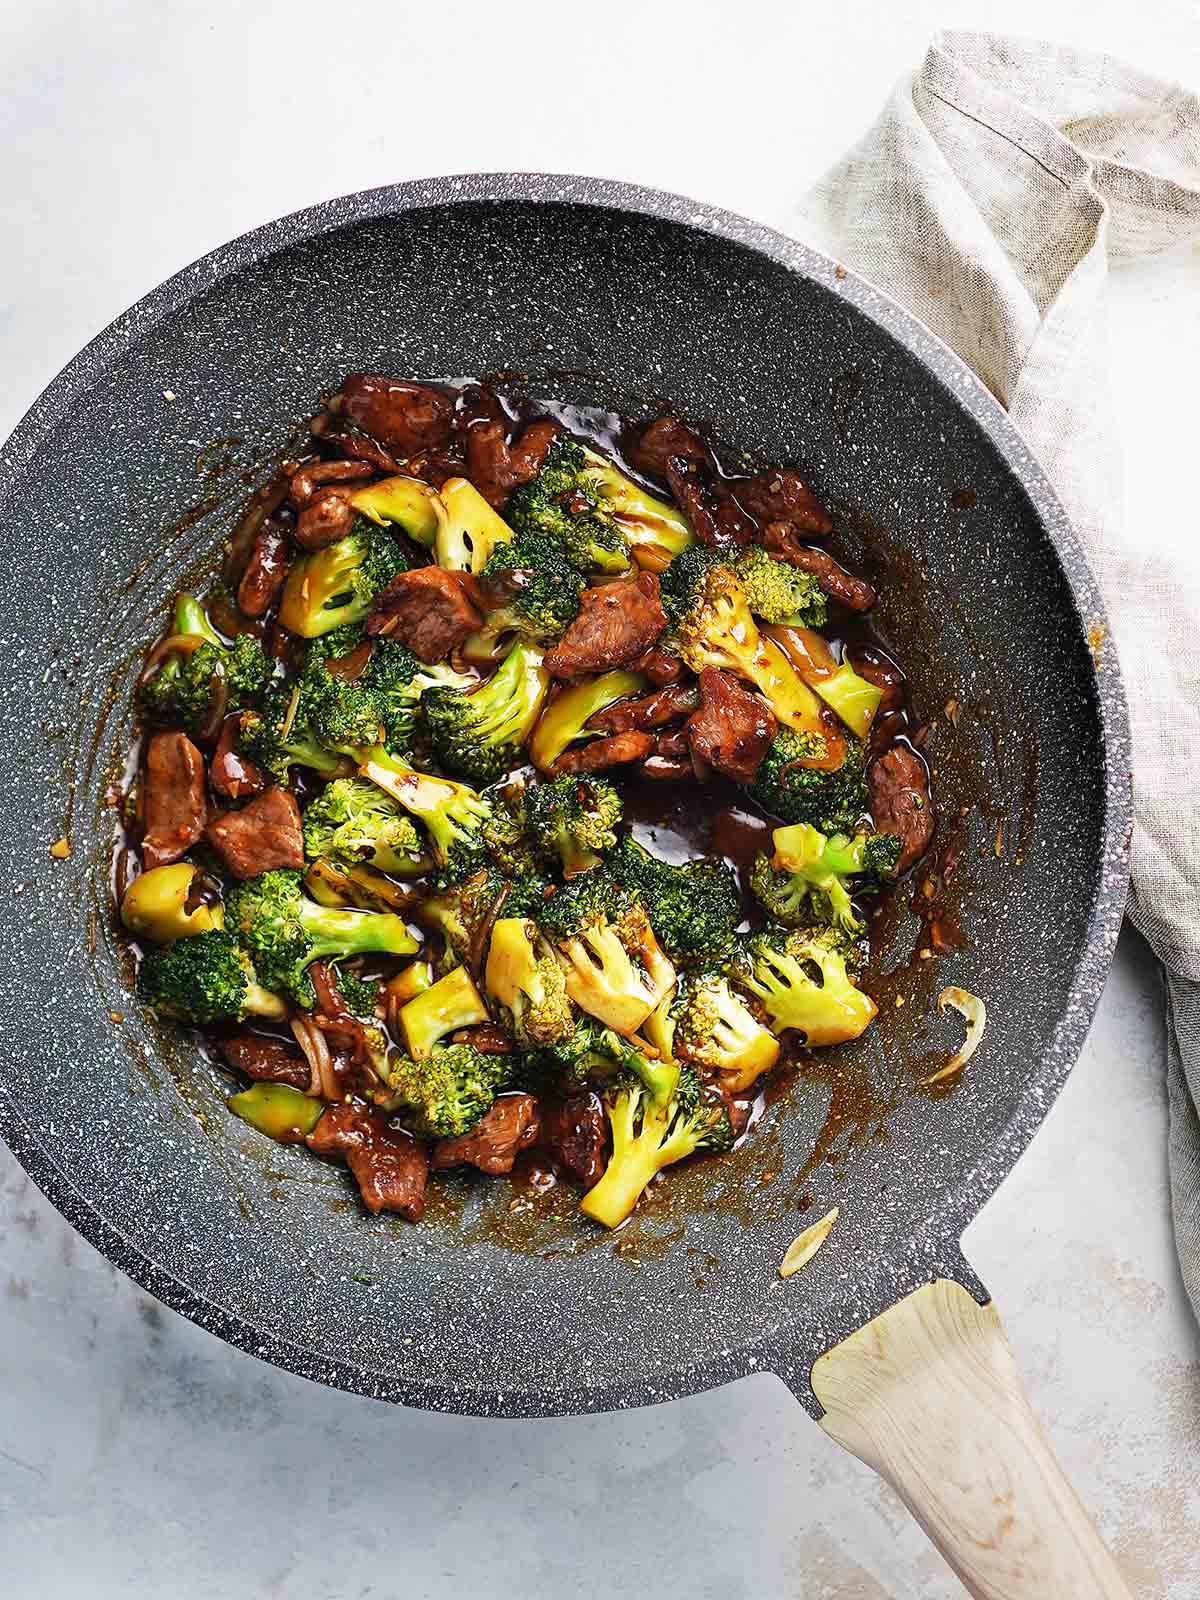 A wok with broccoli stir fry.